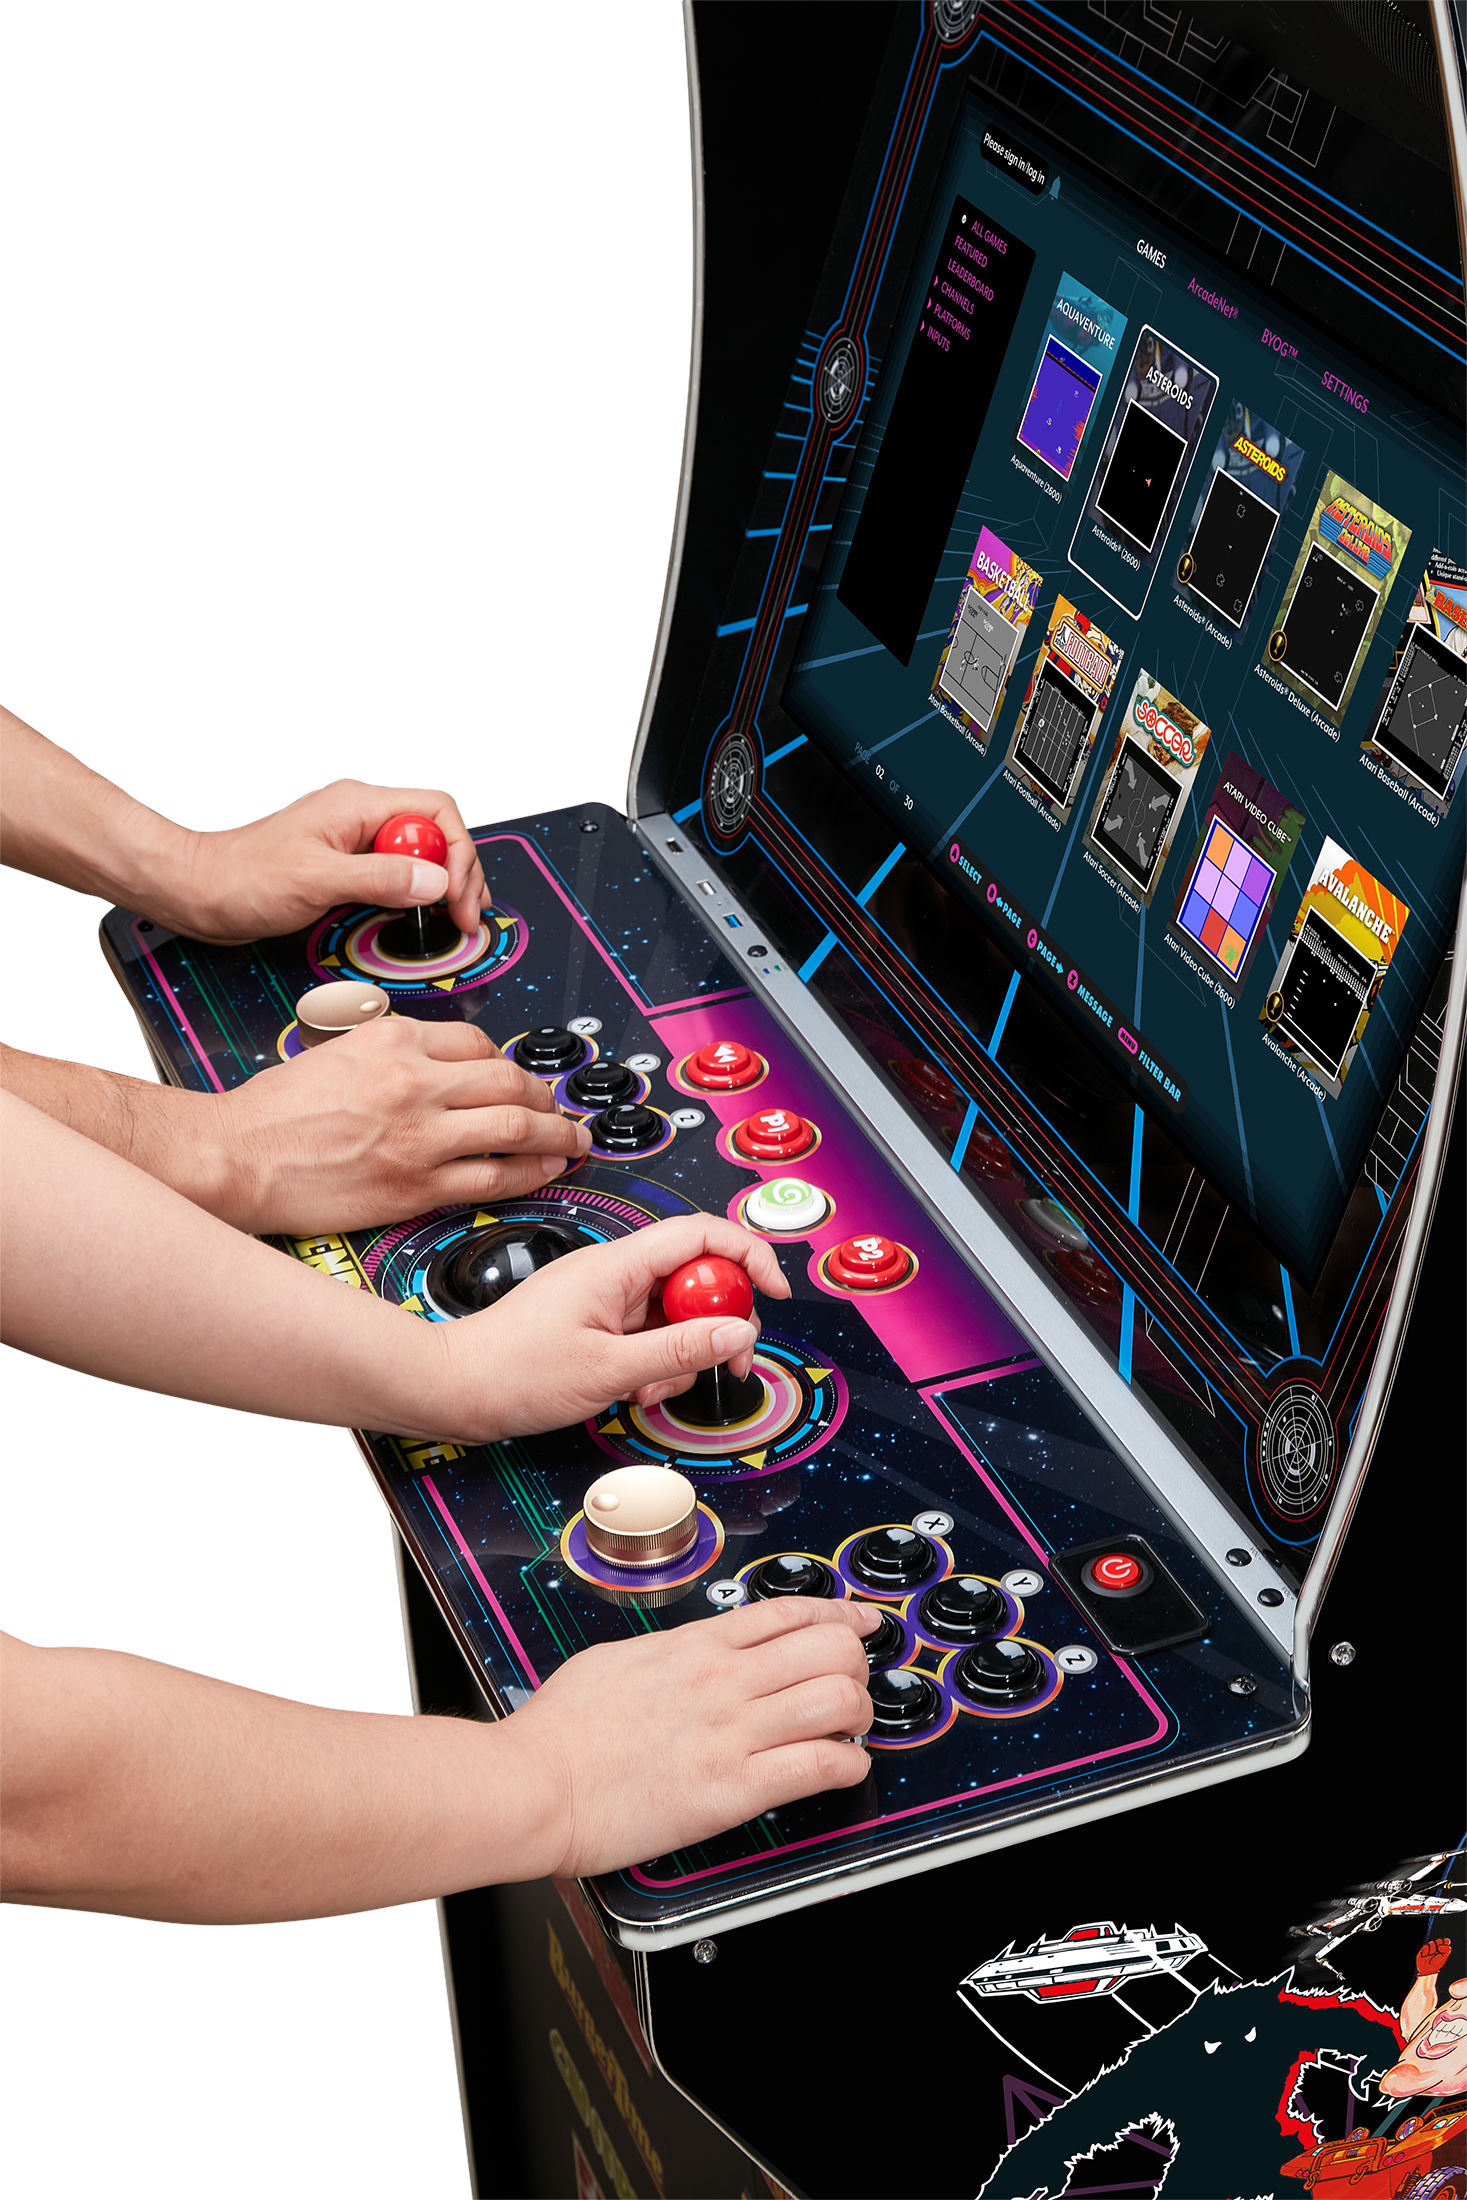 Arkademaskine - AtGames Legends Ultimate Arcade 1.1 (300 spil) AtGames